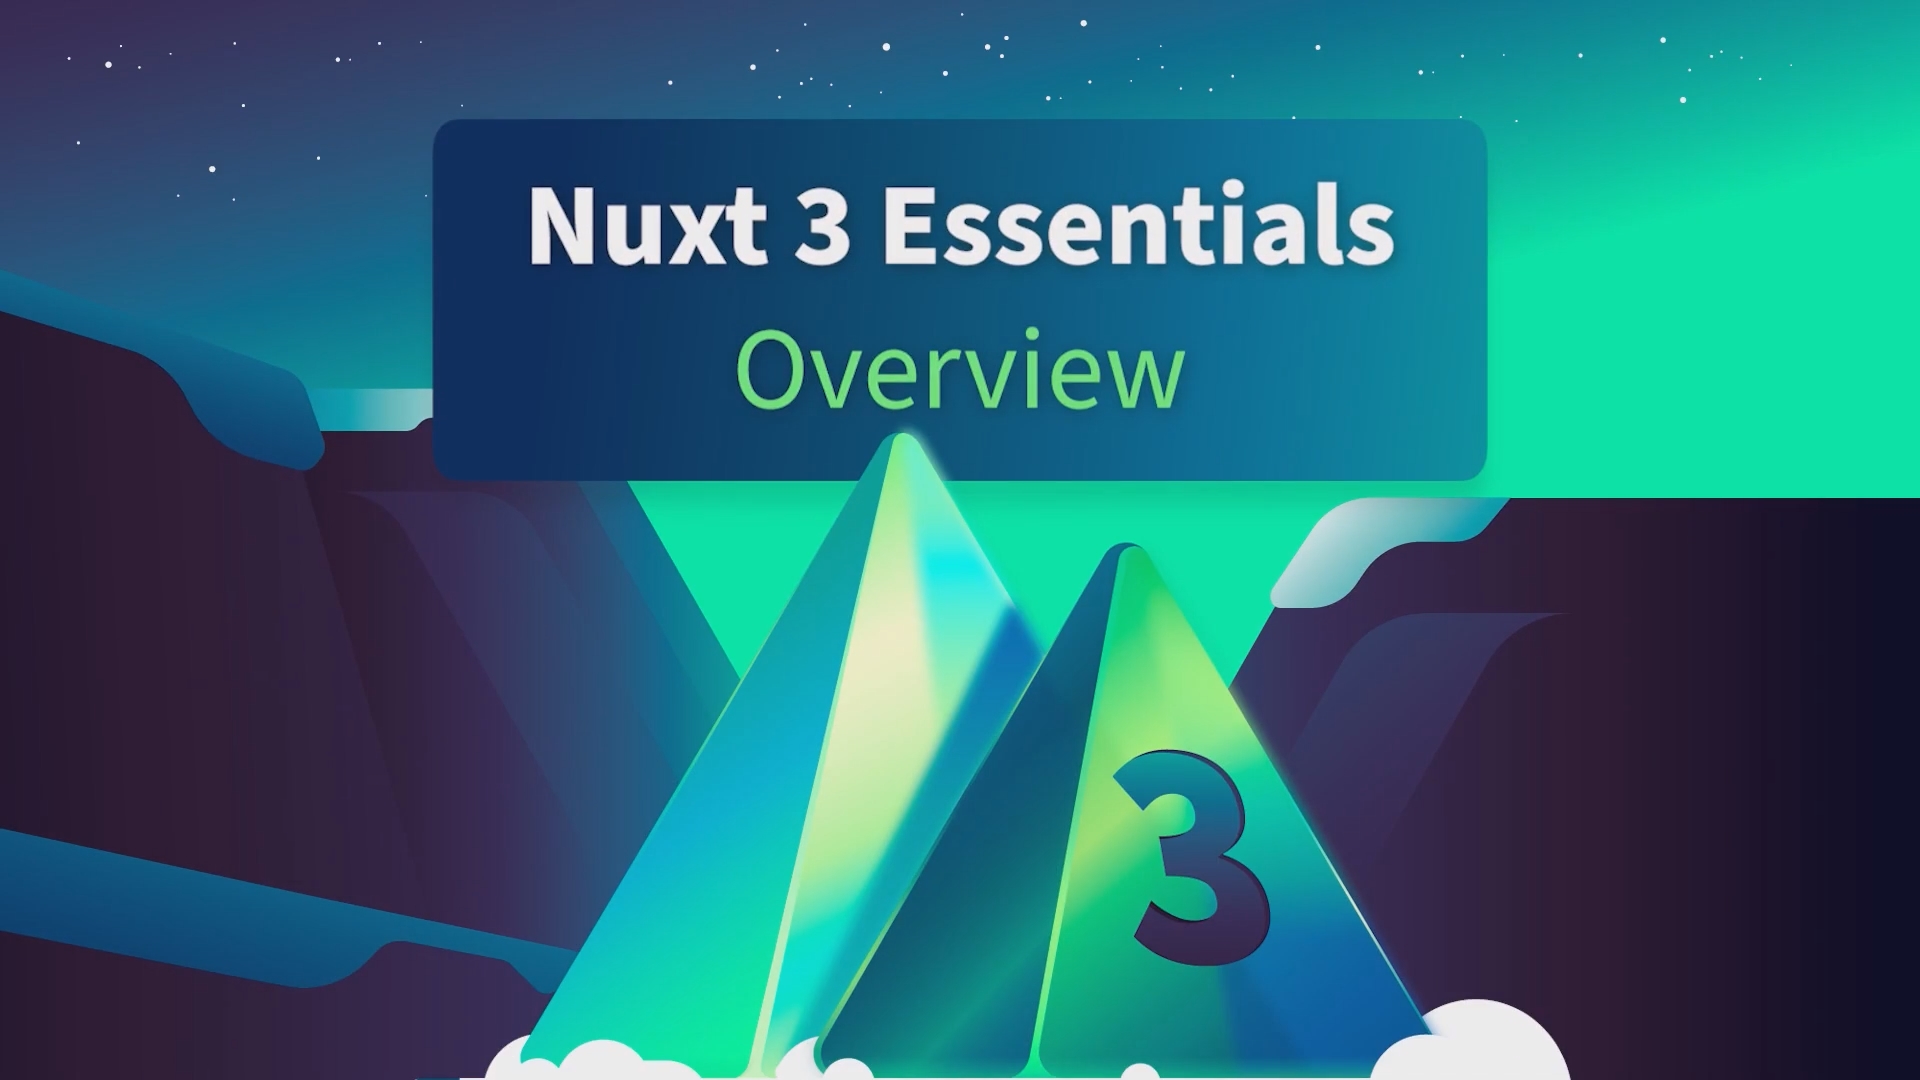 Nuxt 3 Essentials